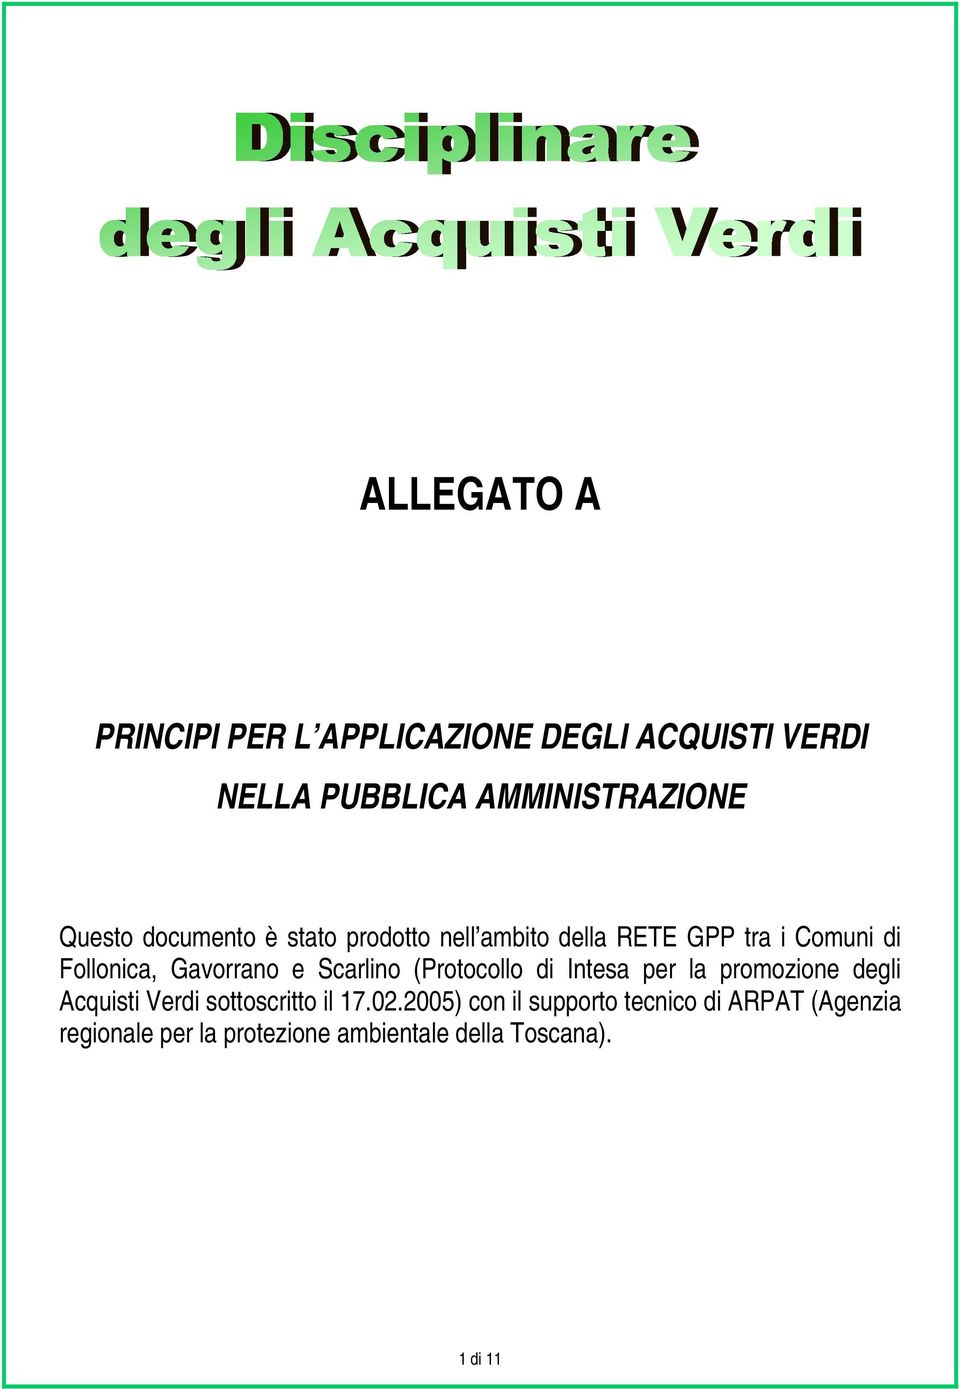 Scarlino (Protocollo di Intesa per la promozione degli Acquisti Verdi sottoscritto il 17.02.